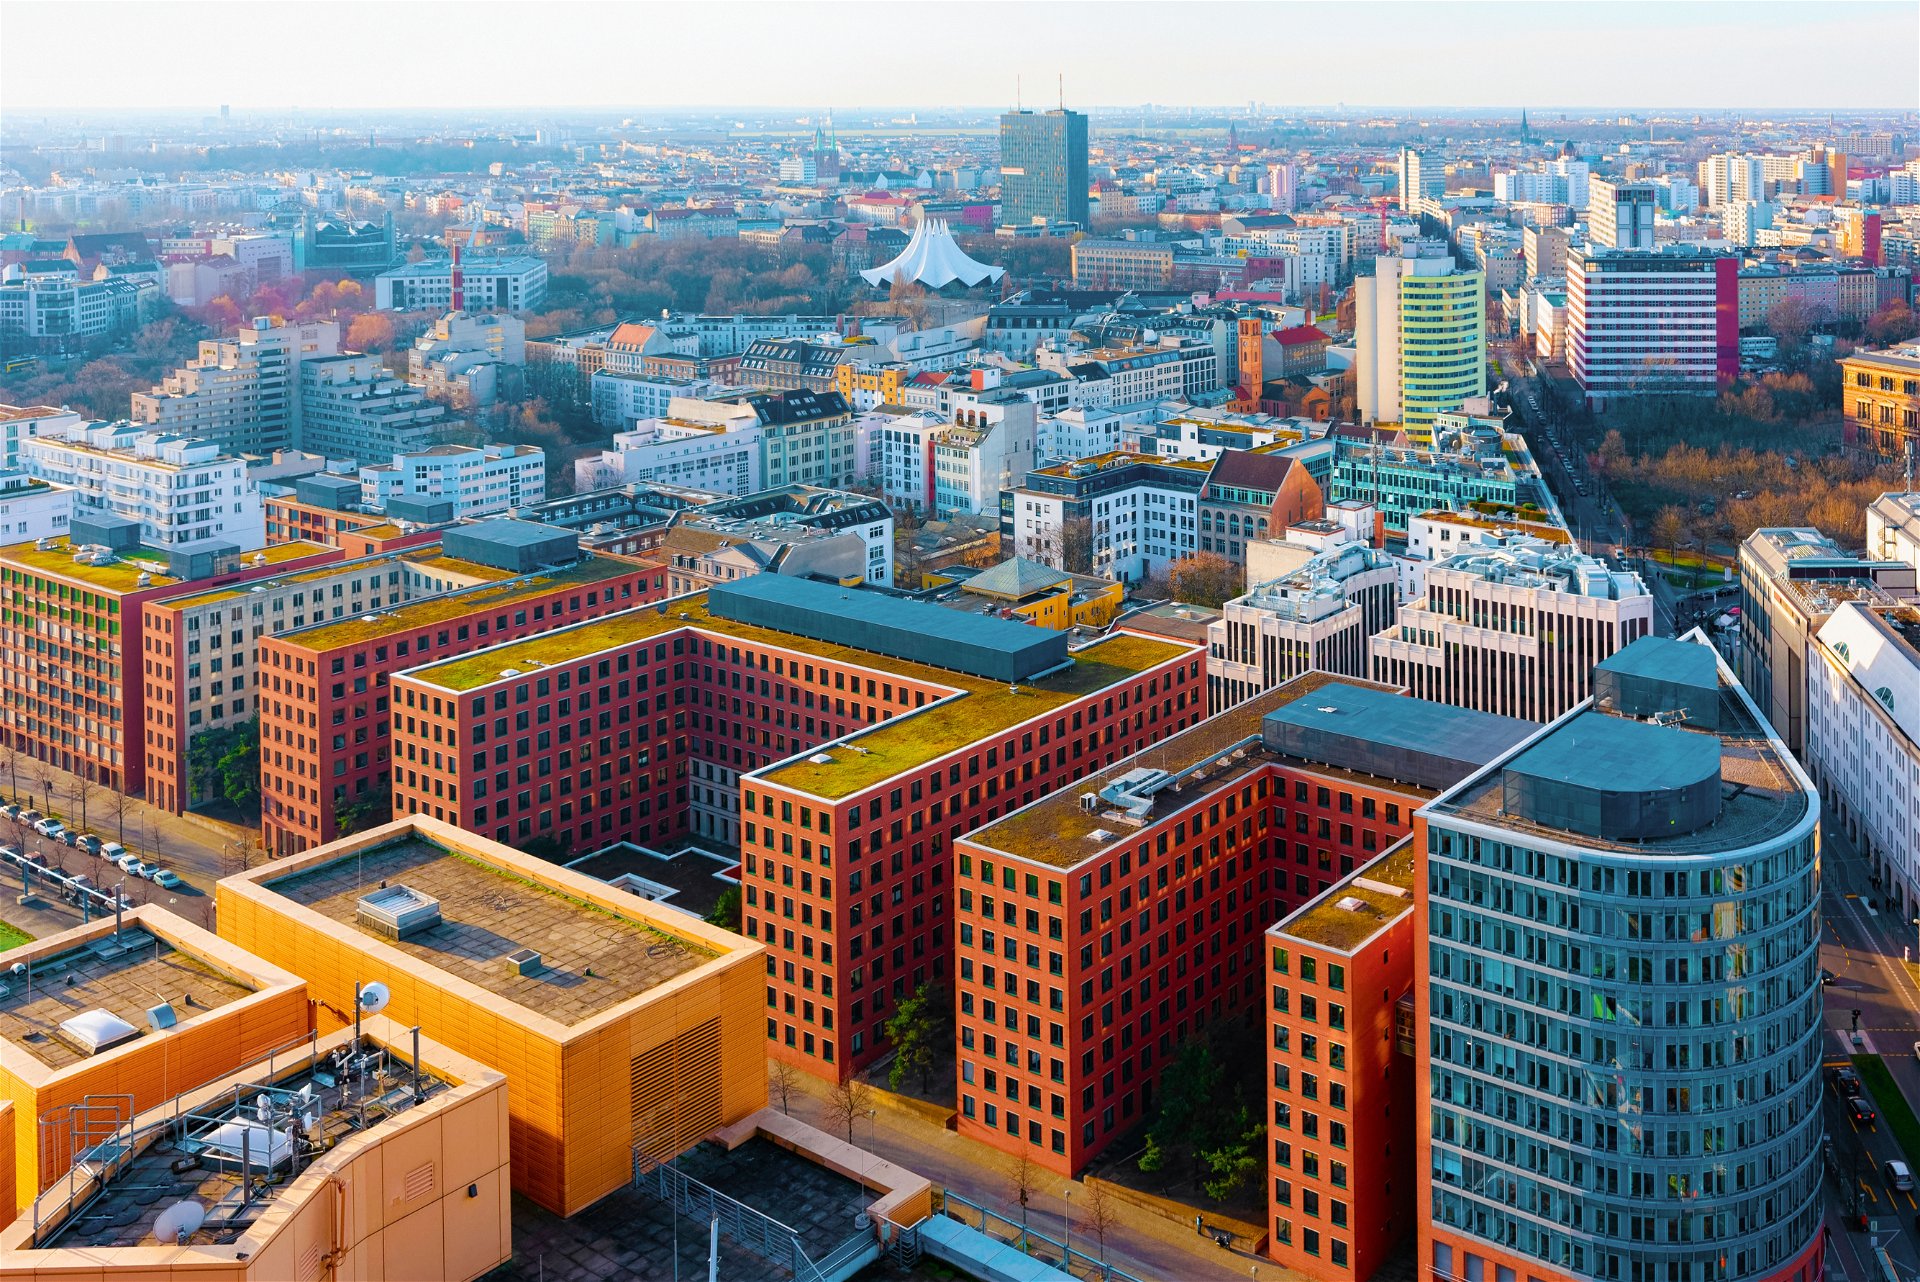 Berlin bleibt stabil: Deutschland bleibt in den Augen der Investoren ein sicherer Hafen. Berlin, Frankfurt, München und Hamburg sind unter den europäischen Top-Ten-Städten beim jährlichen »Emerging Trends«-Report.